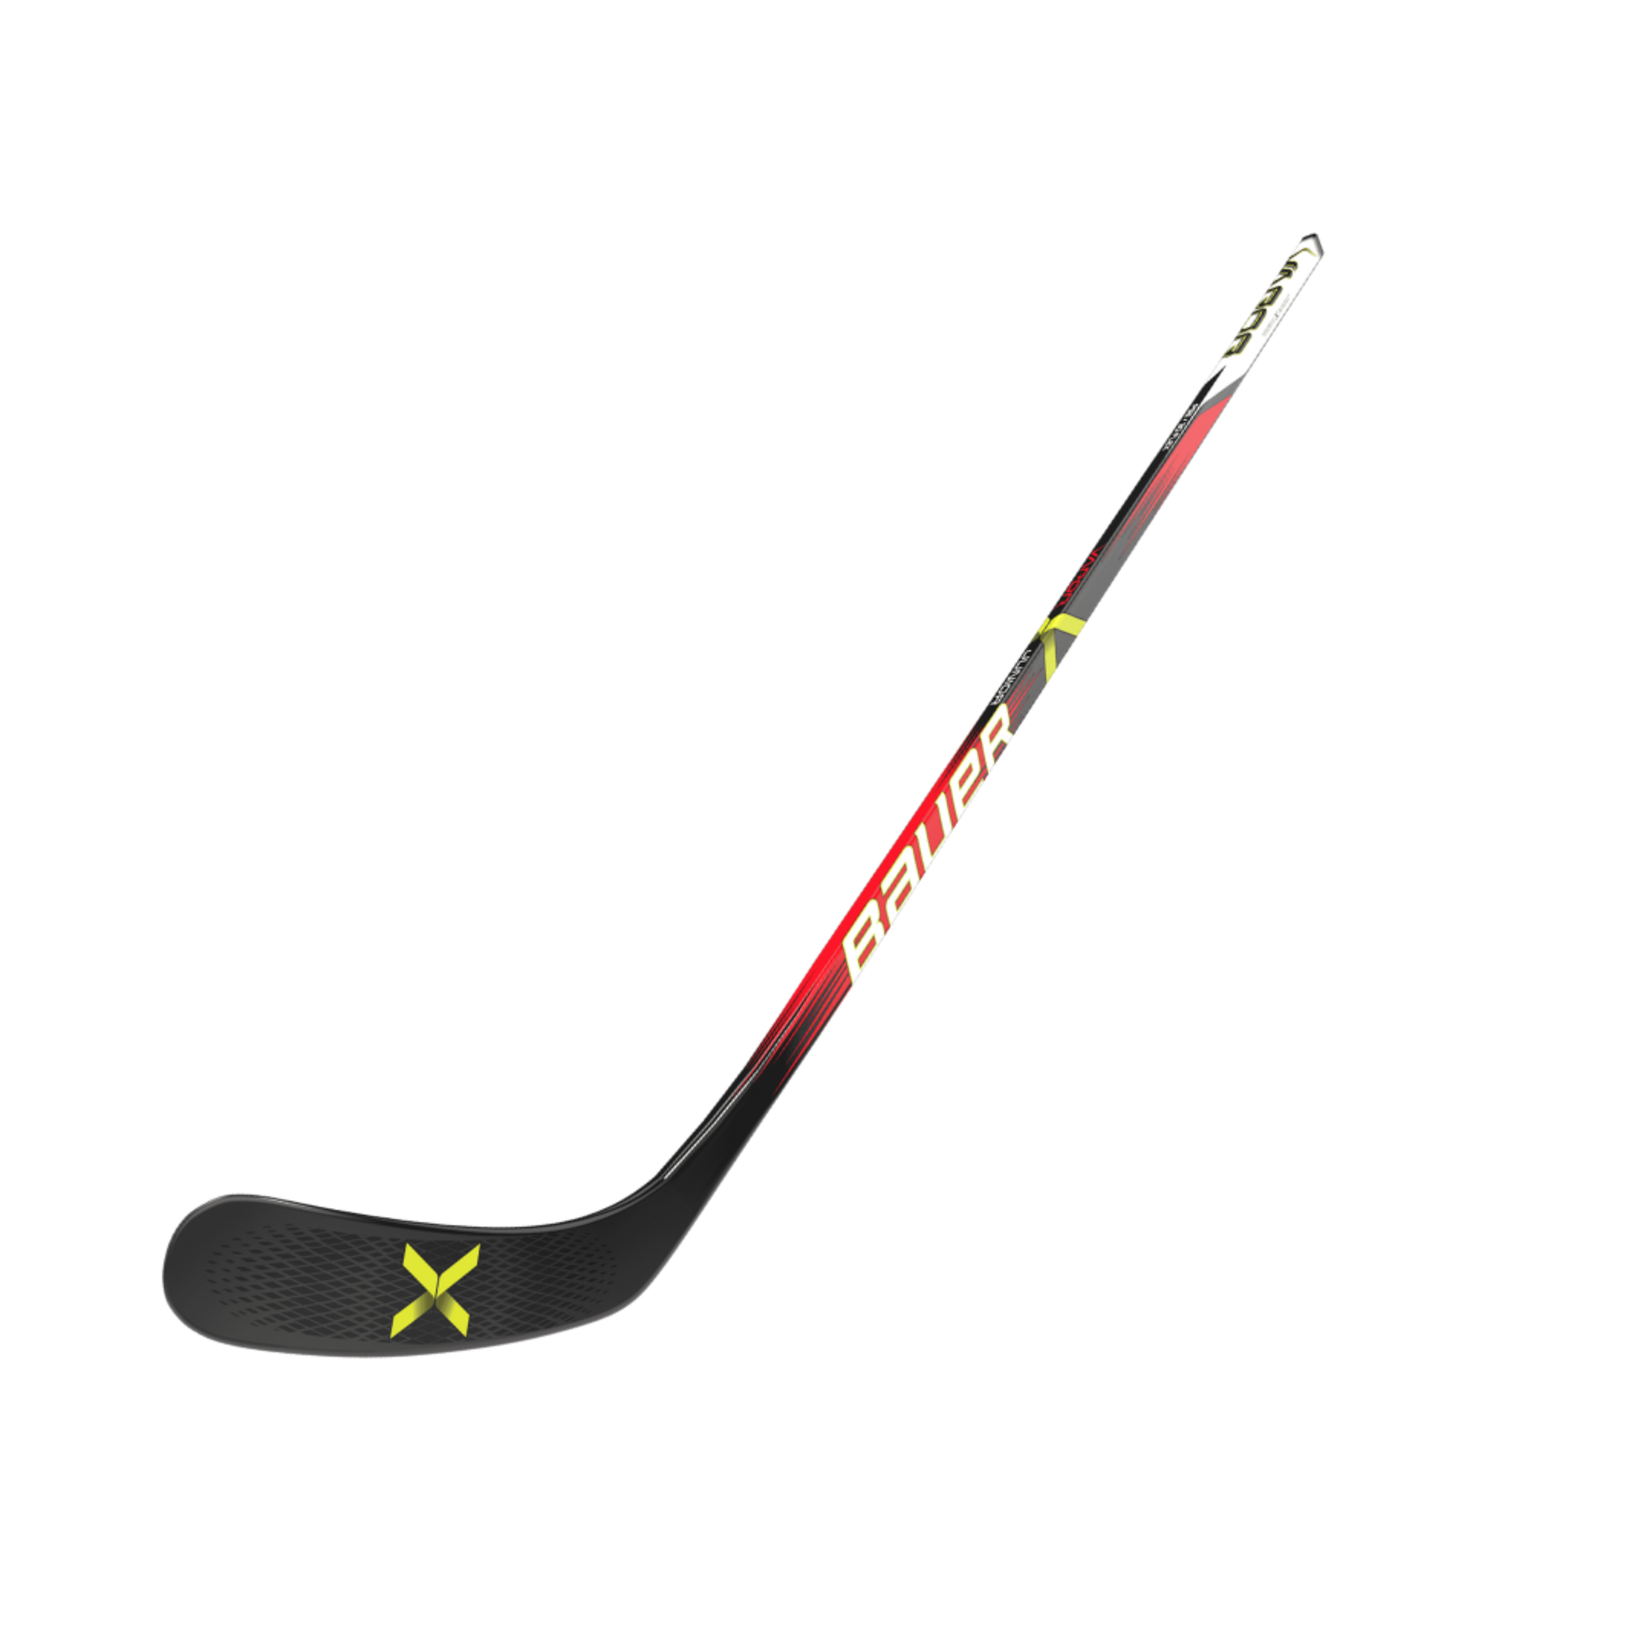 Bauer Bauer Hockey Stick, Vapor, Grip, Youth 46"